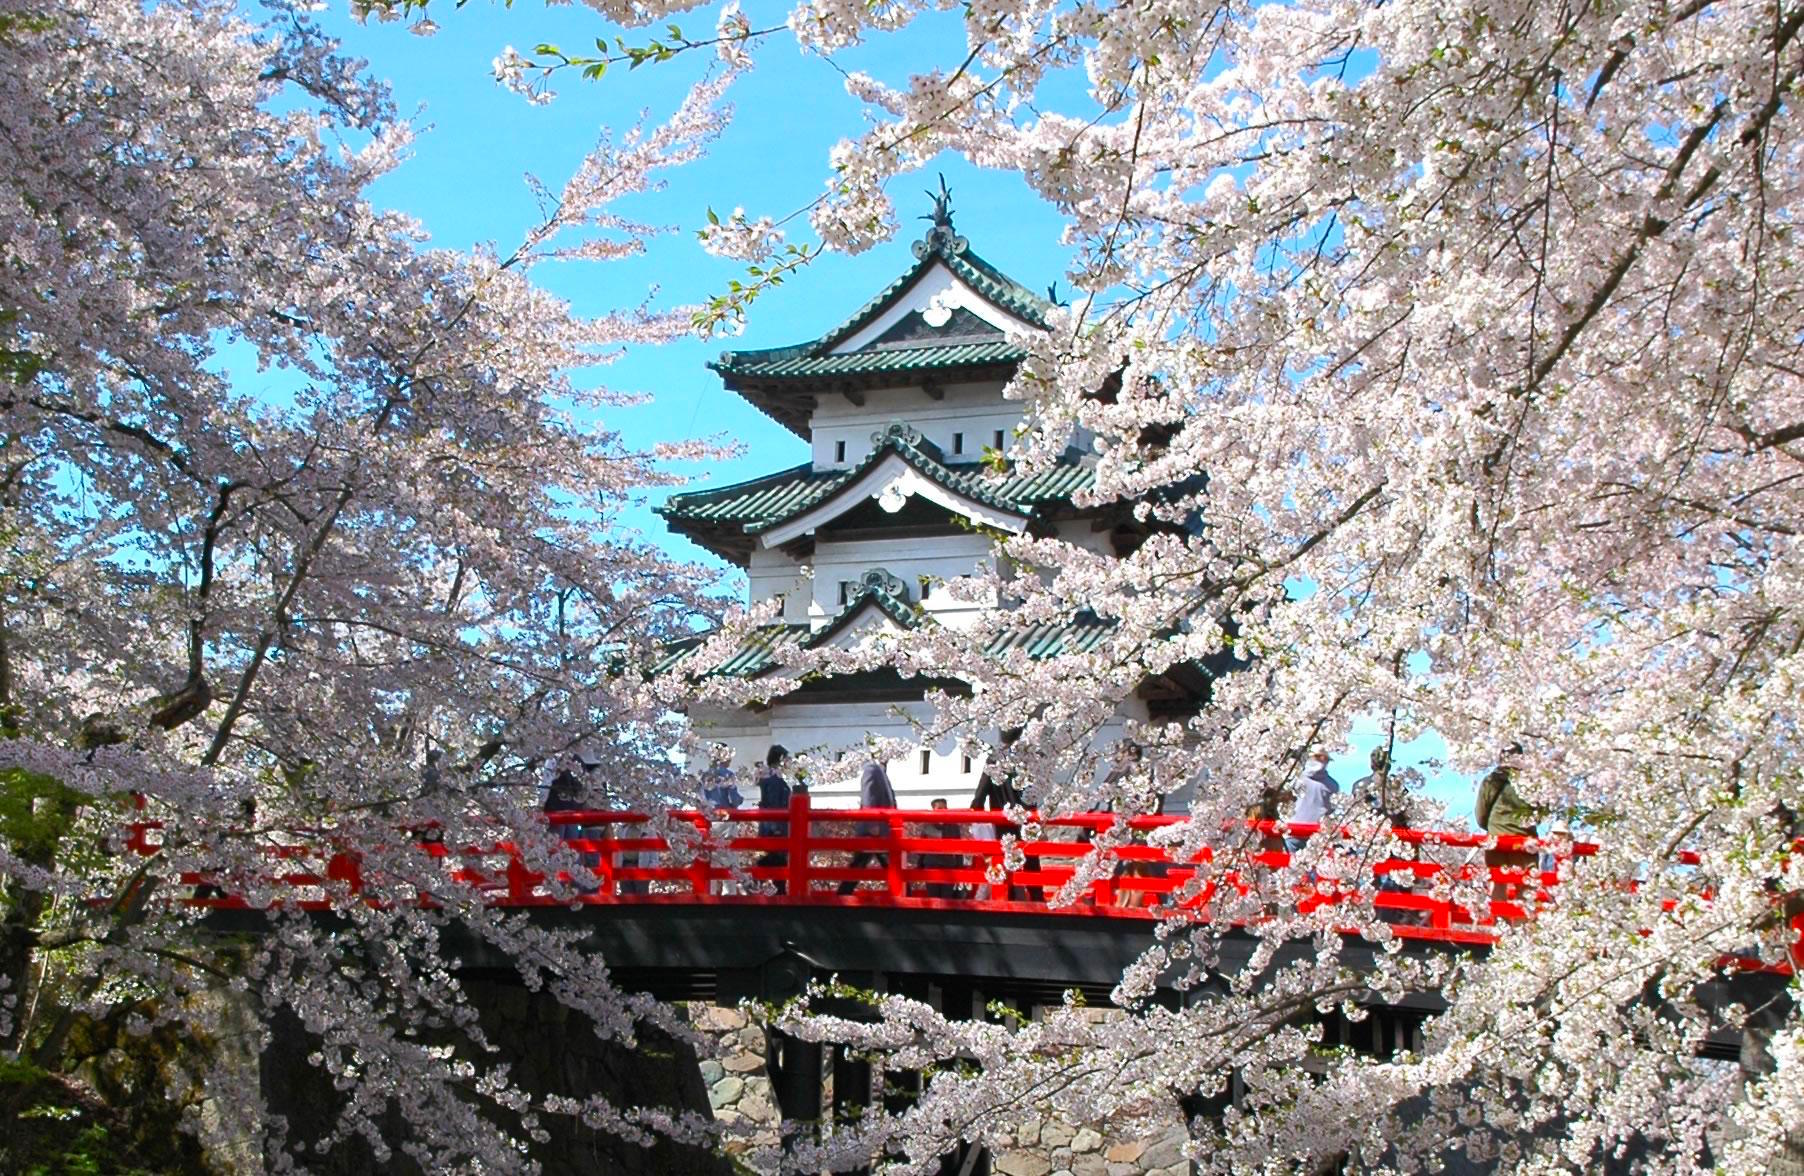 取材班が選んだ日本一の花見スポットは 弘前城 弘前公園